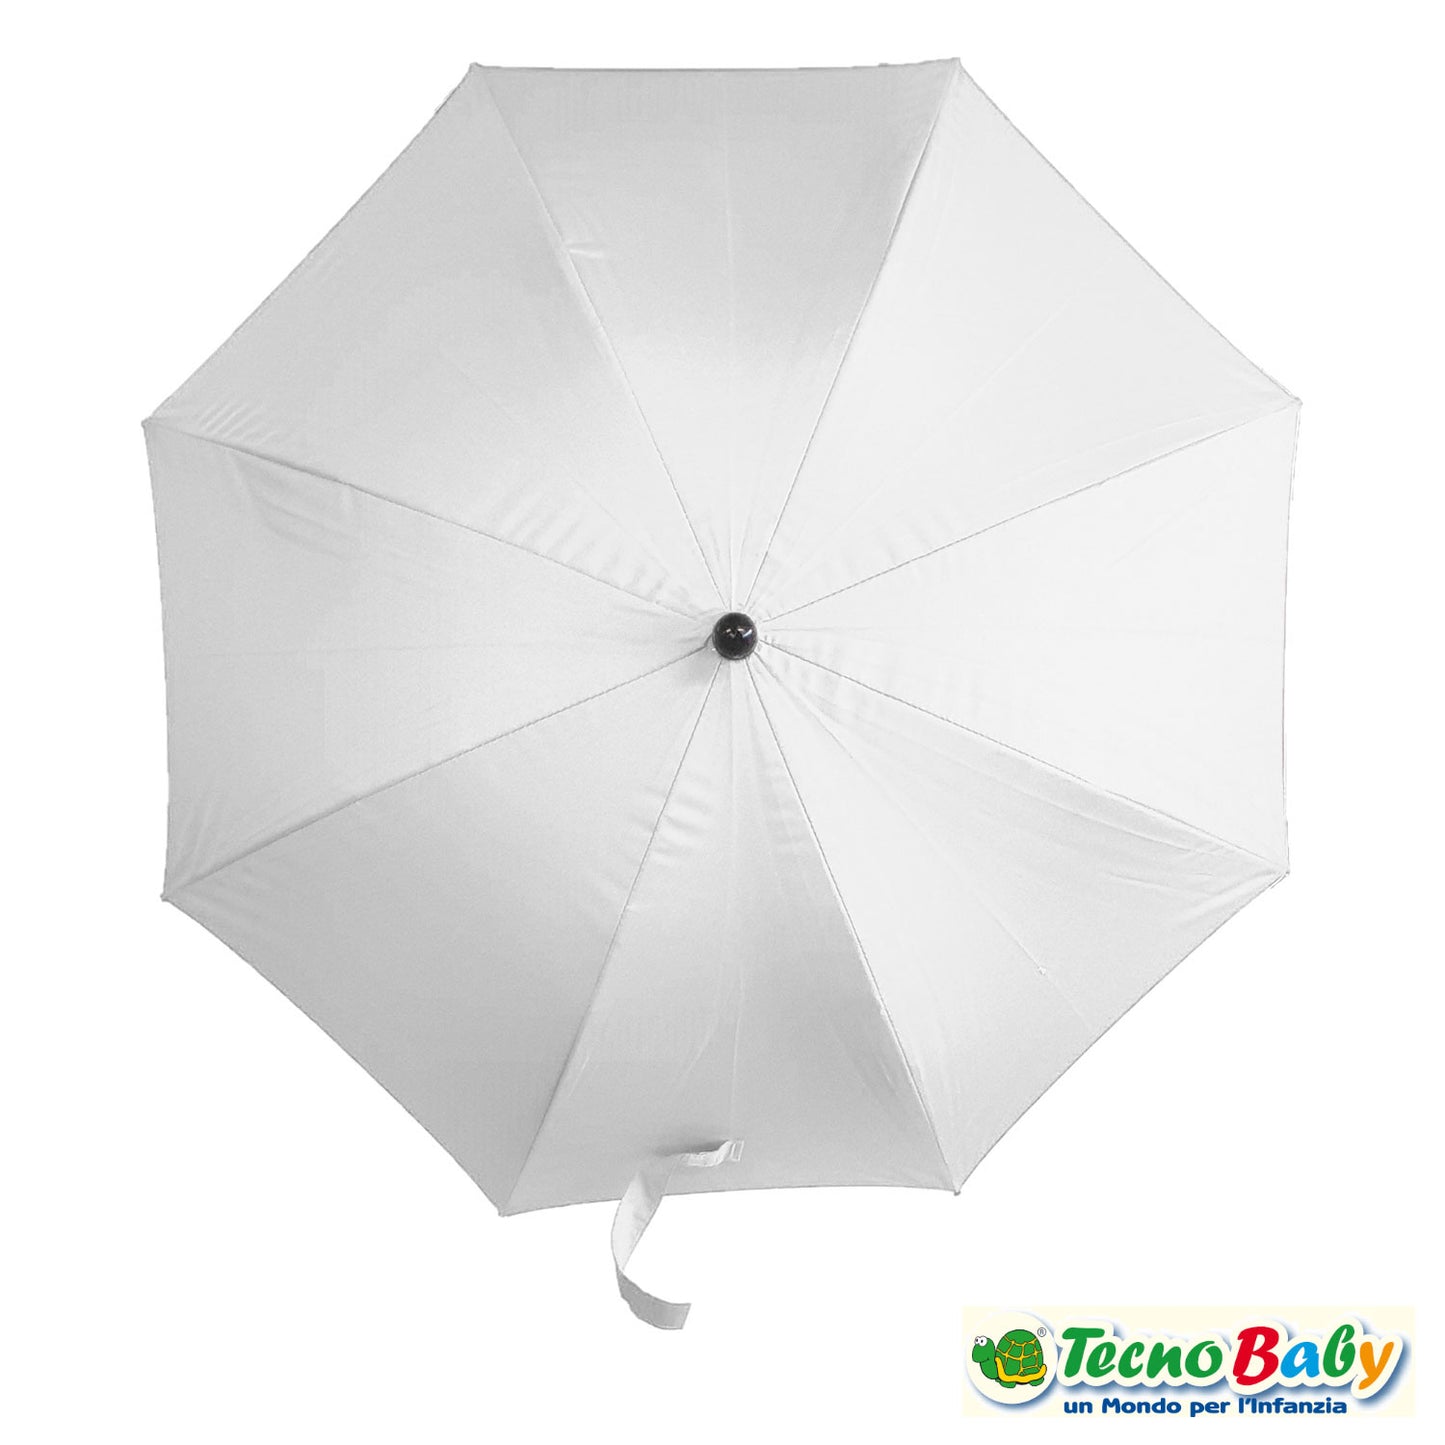 Tecnobaby - Ombrellino parasole universale per passeggino